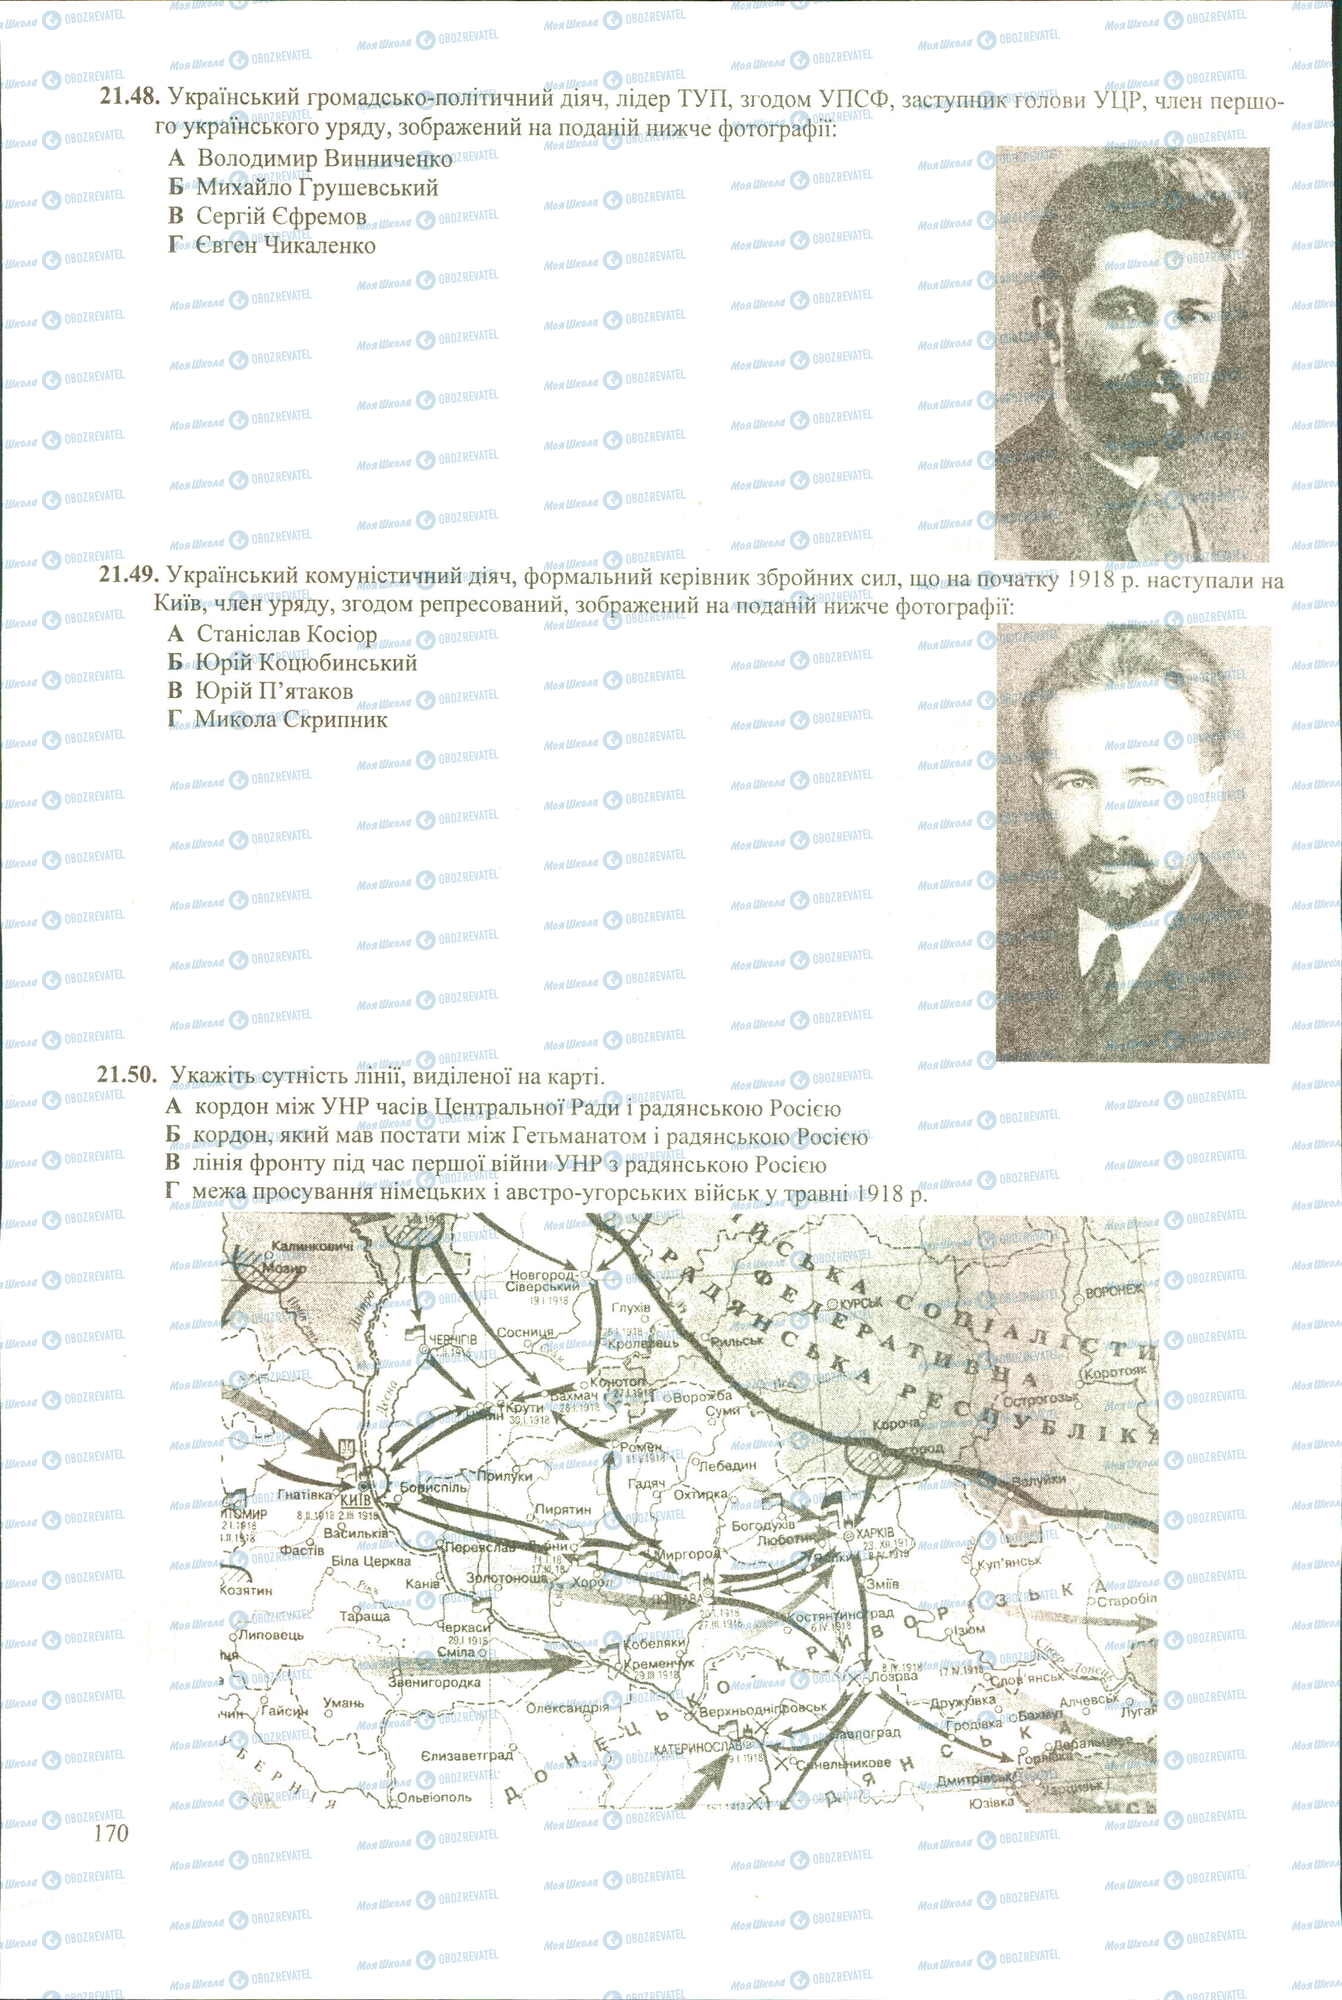 ЗНО История Украины 11 класс страница 48-50